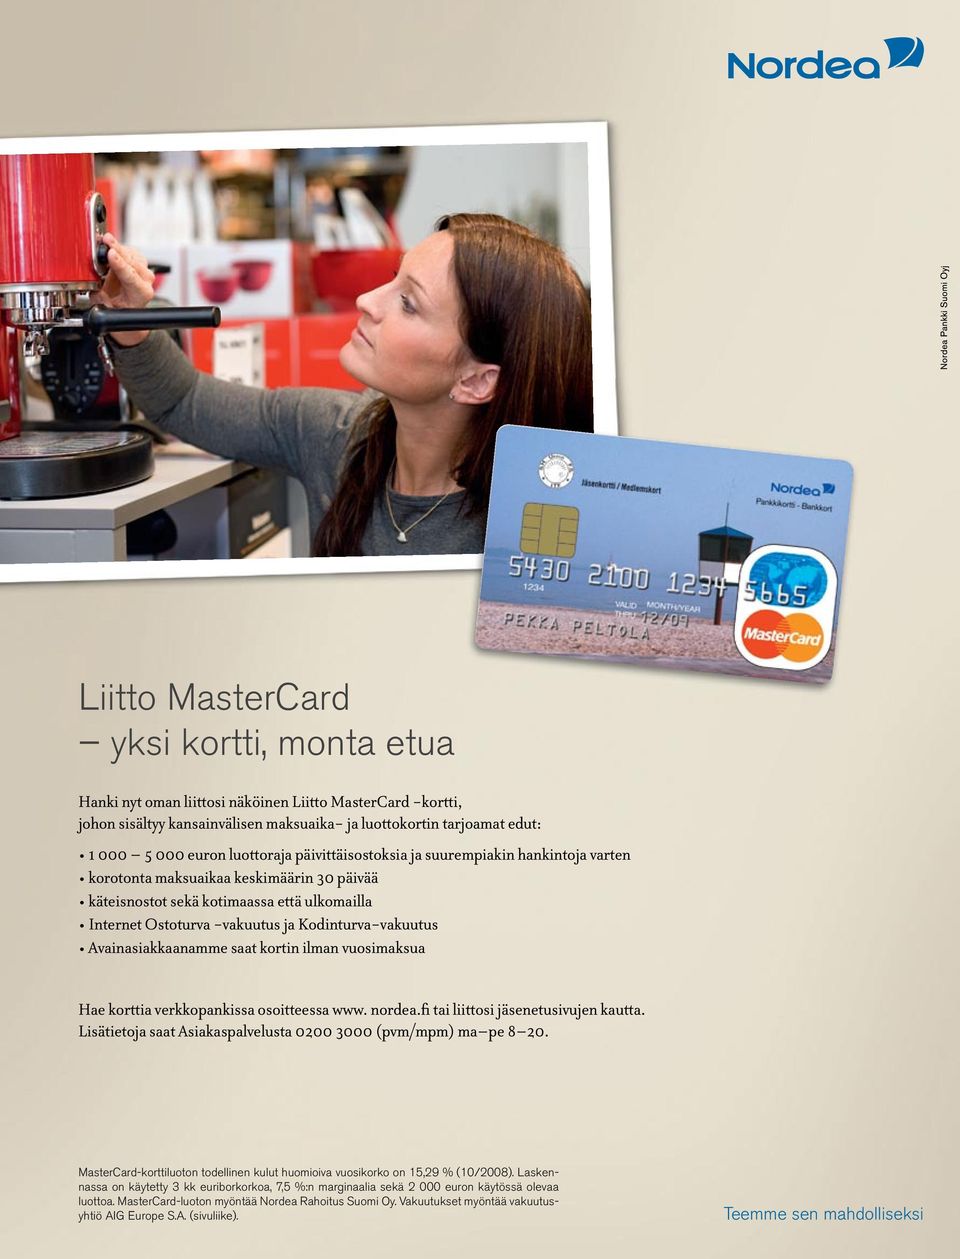 Kodinturva-vakuutus Avainasiakkaanamme saat kortin ilman vuosimaksua Hae korttia verkkopankissa osoitteessa www. nordea.fi tai liittosi jäsenetusivujen kautta.